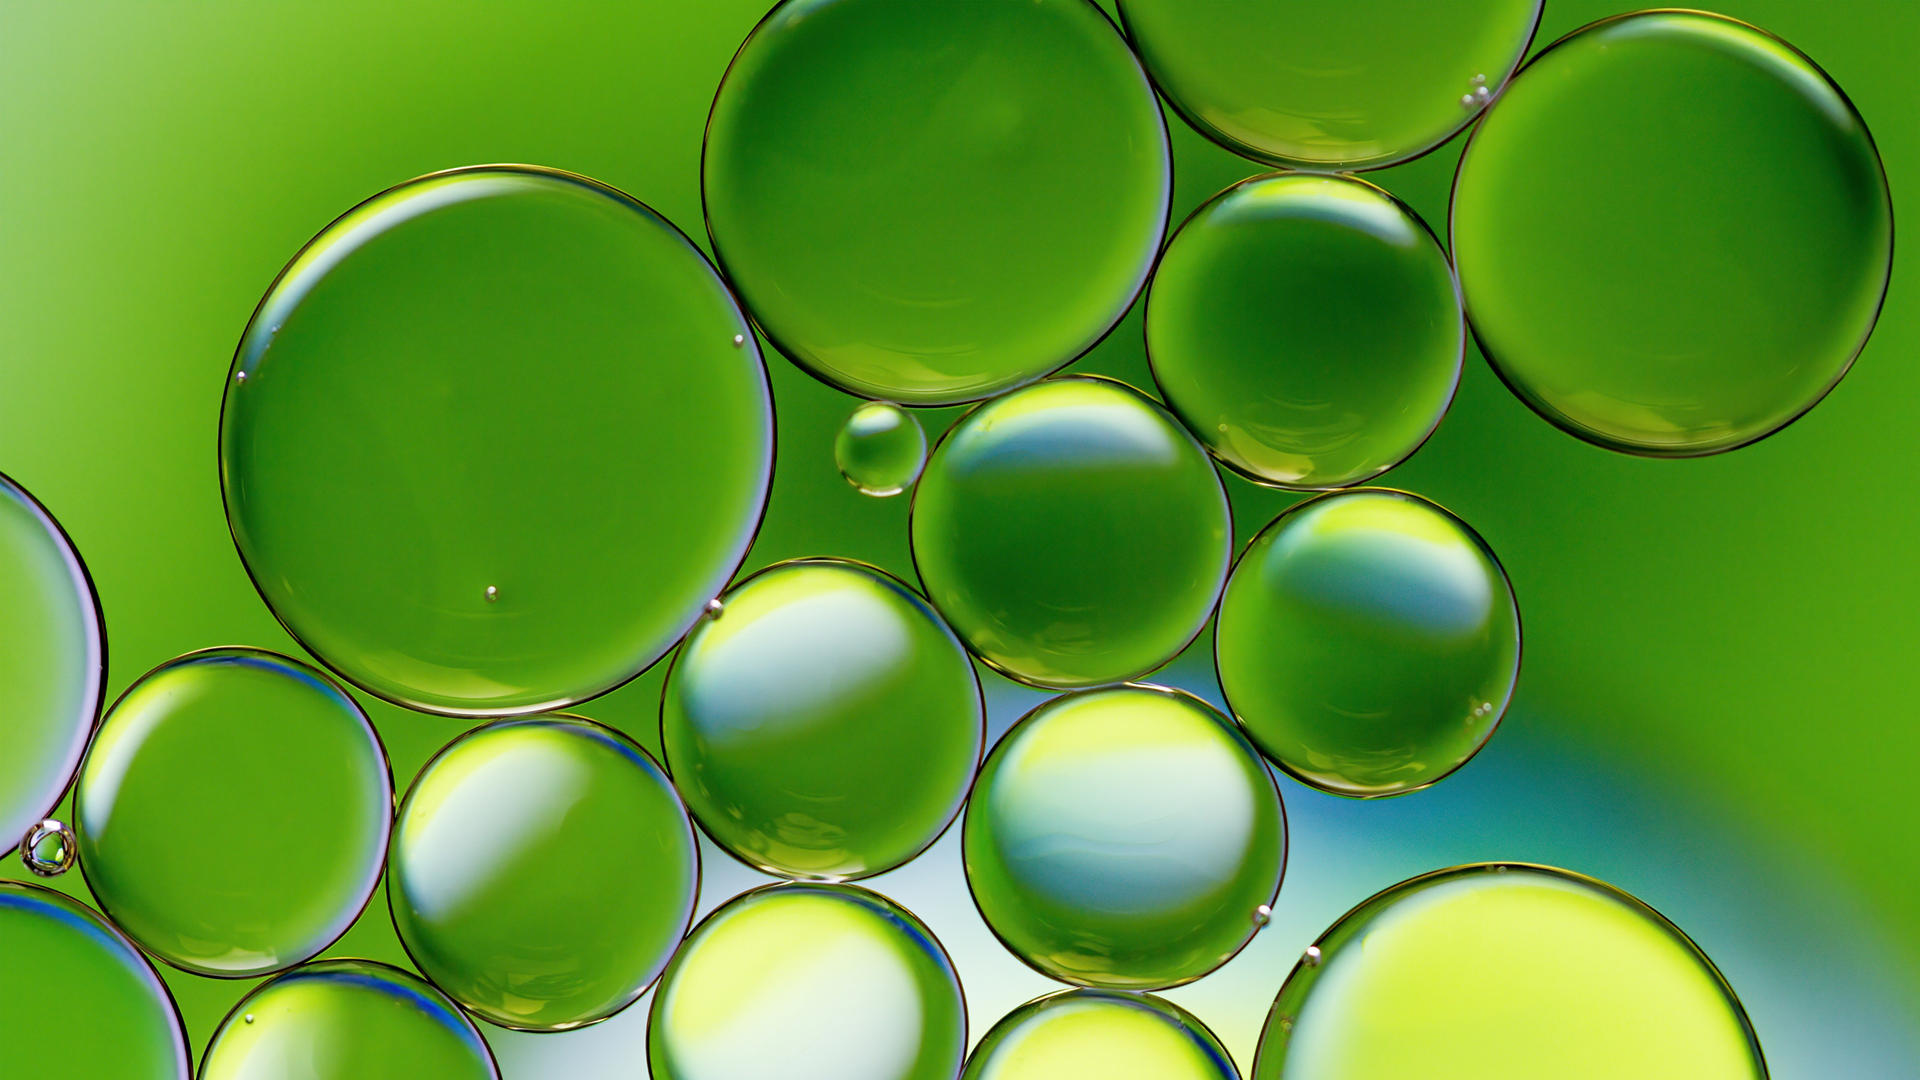 Imagem coloria de gotas de óleo flutuando na água